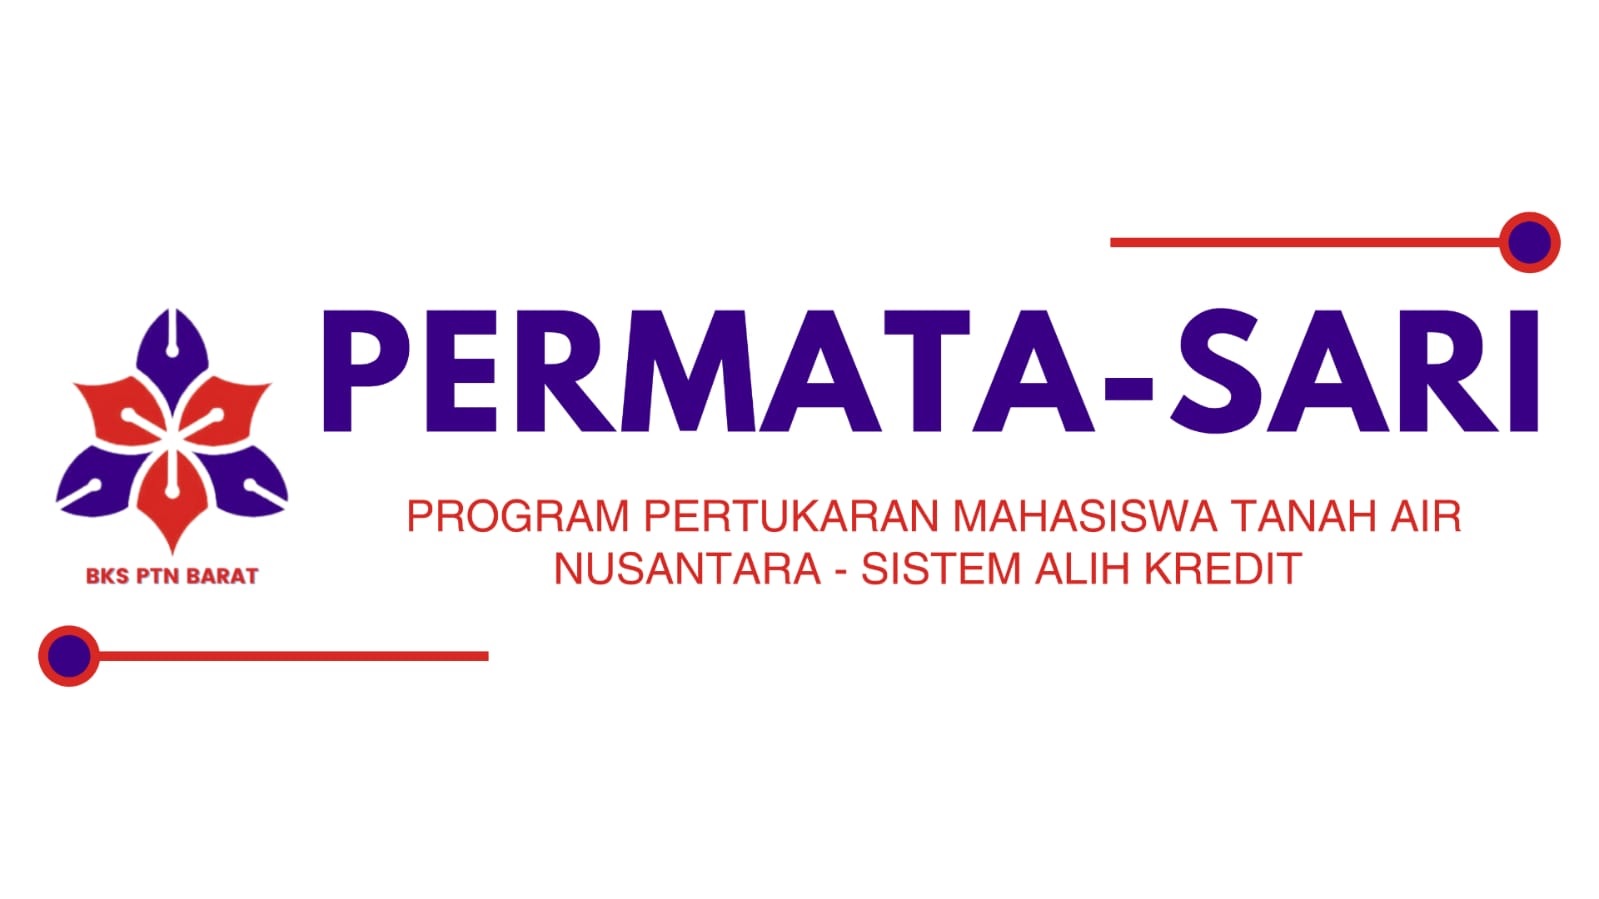 47 Mahasiswa dari 13 PTN Wilayah Barat Indonesia Kuliah Pertukaran PERMATA-SARI di Unja